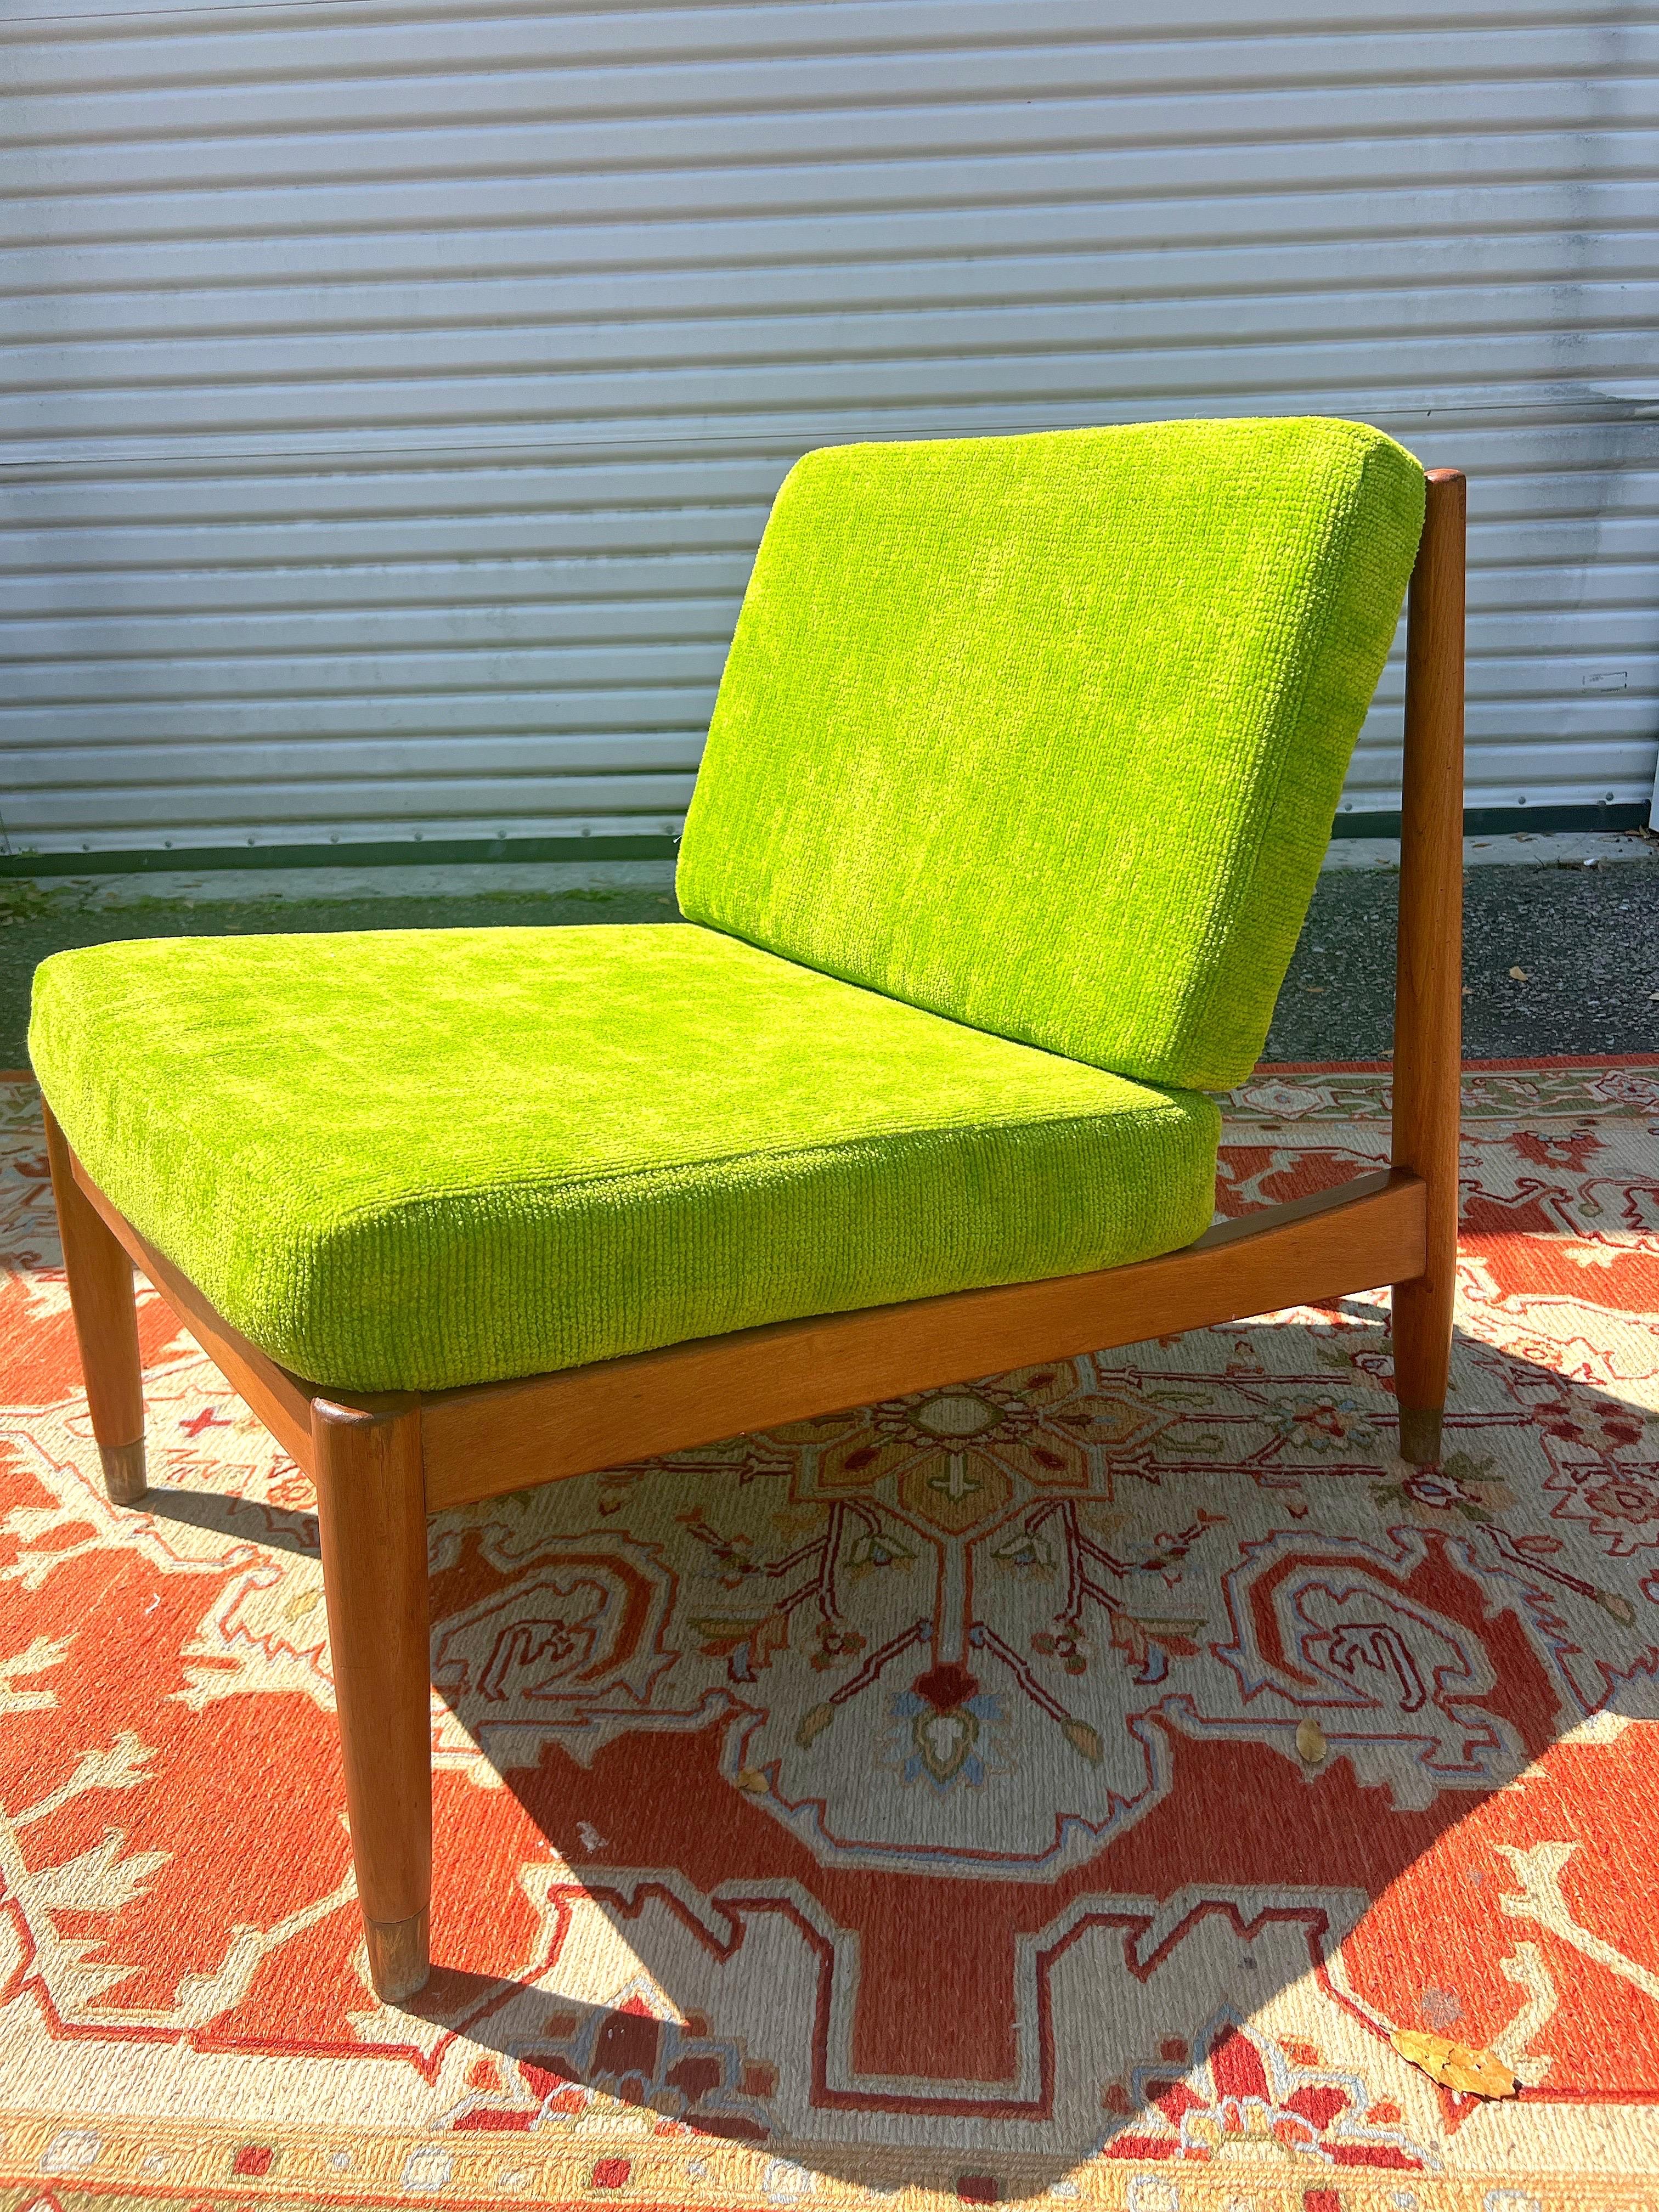 Chaise longue Folke Ohlsson fabriquée pour dux en Suède, vers les années 1950. Cette chaise longue moderne danoise
 Fabriqué en noyer de la plus haute qualité. La chaise est également dotée d'un cadre en bois de noyer et de cinq lattes verticales au